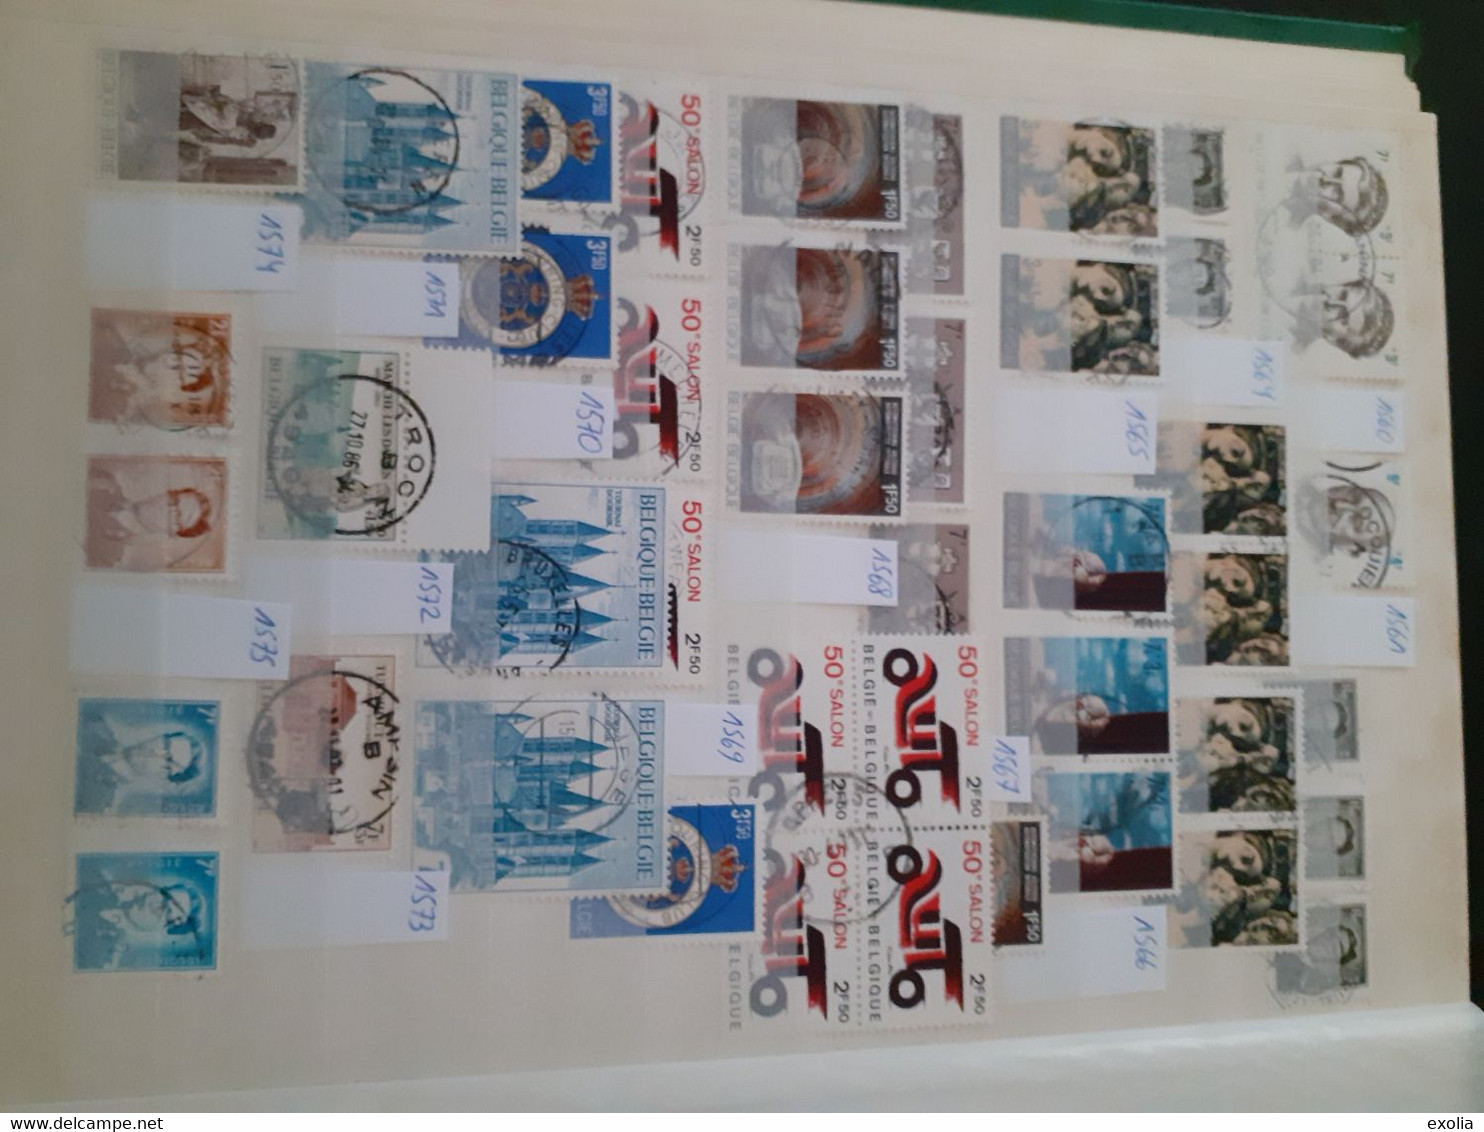 Collection timbres Belgique lot 3 albums oblitérations centrales choisies concours entre COB numéros 30 et 4415. Lire